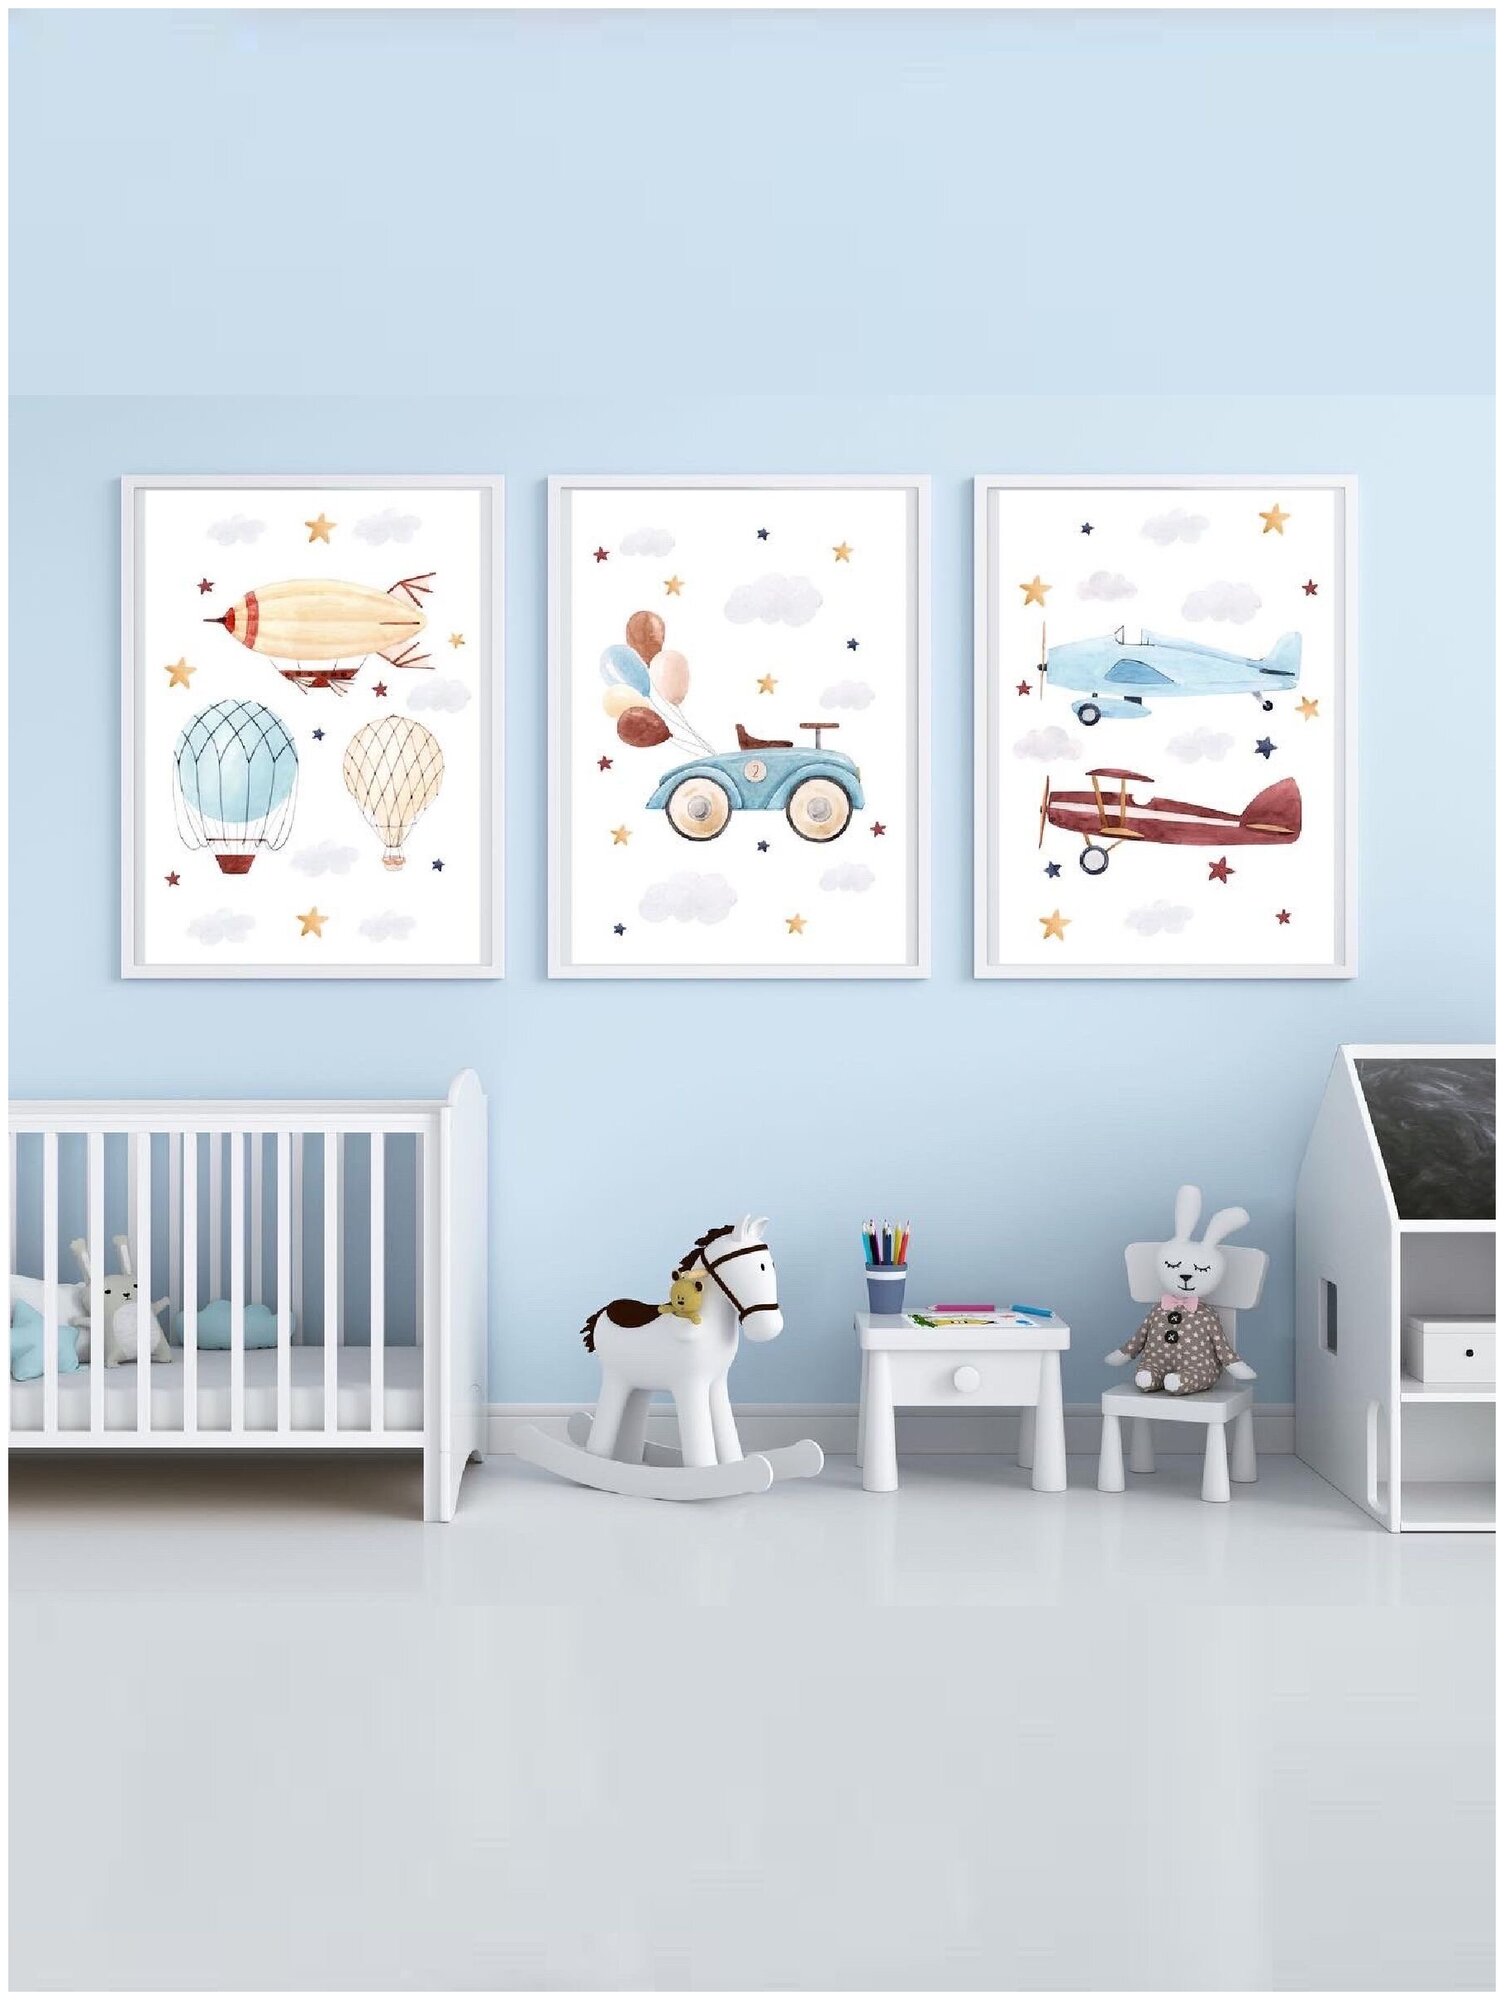 Постеры плакаты на стену детские 30/40 см постеры для мальчика сына для детей постеры картины с самолетами машинами постеры декор в детскую комнату